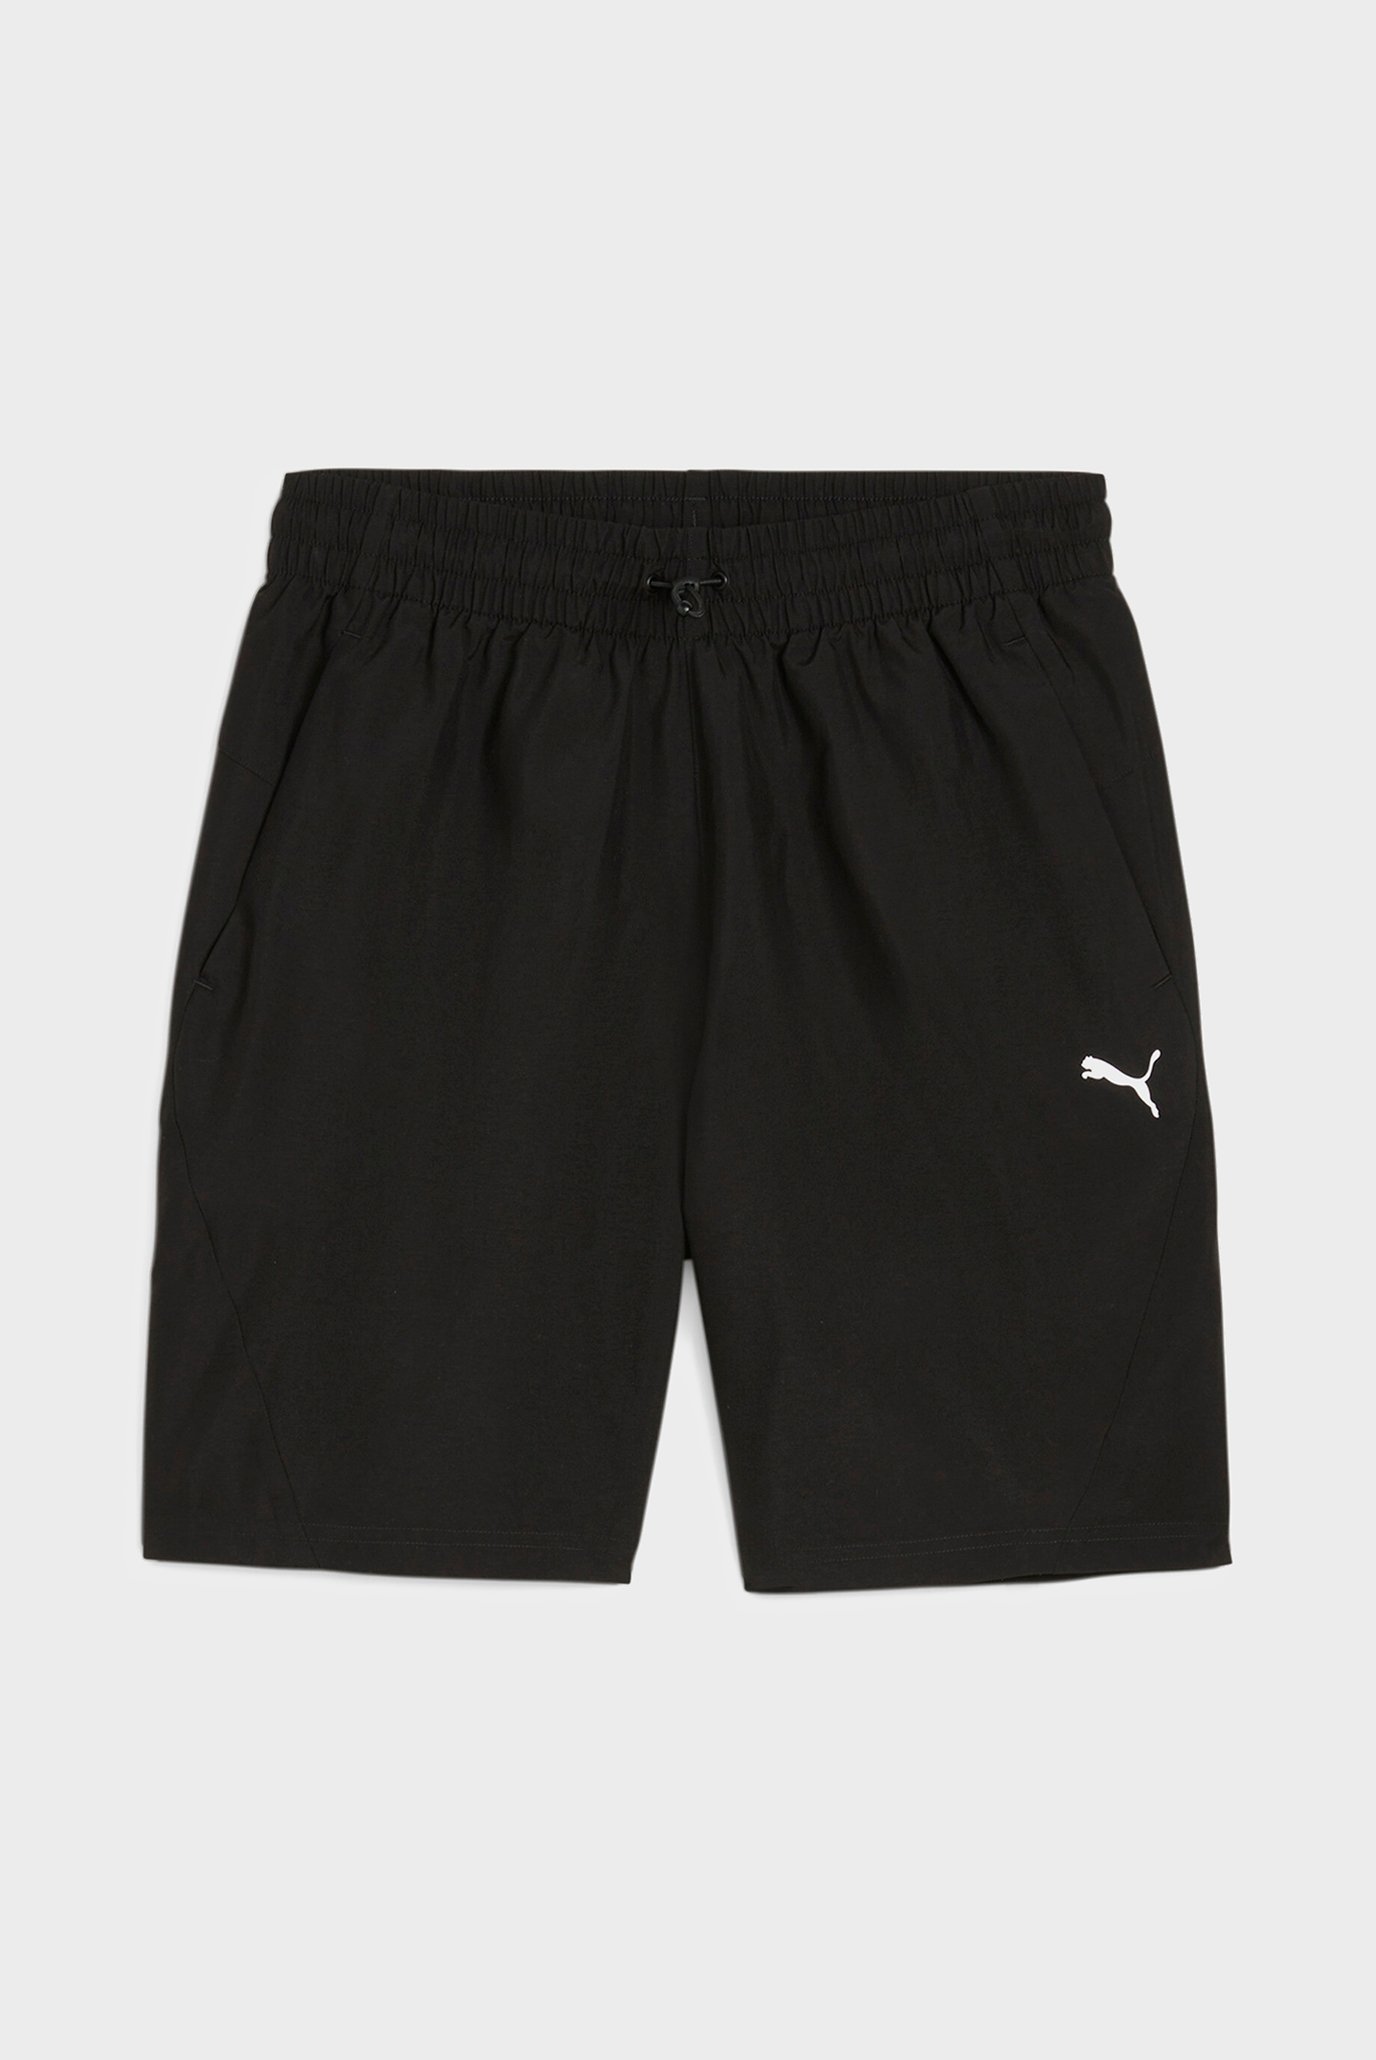 Мужские черные шорты RAD/CAL Men's Woven Shorts 1